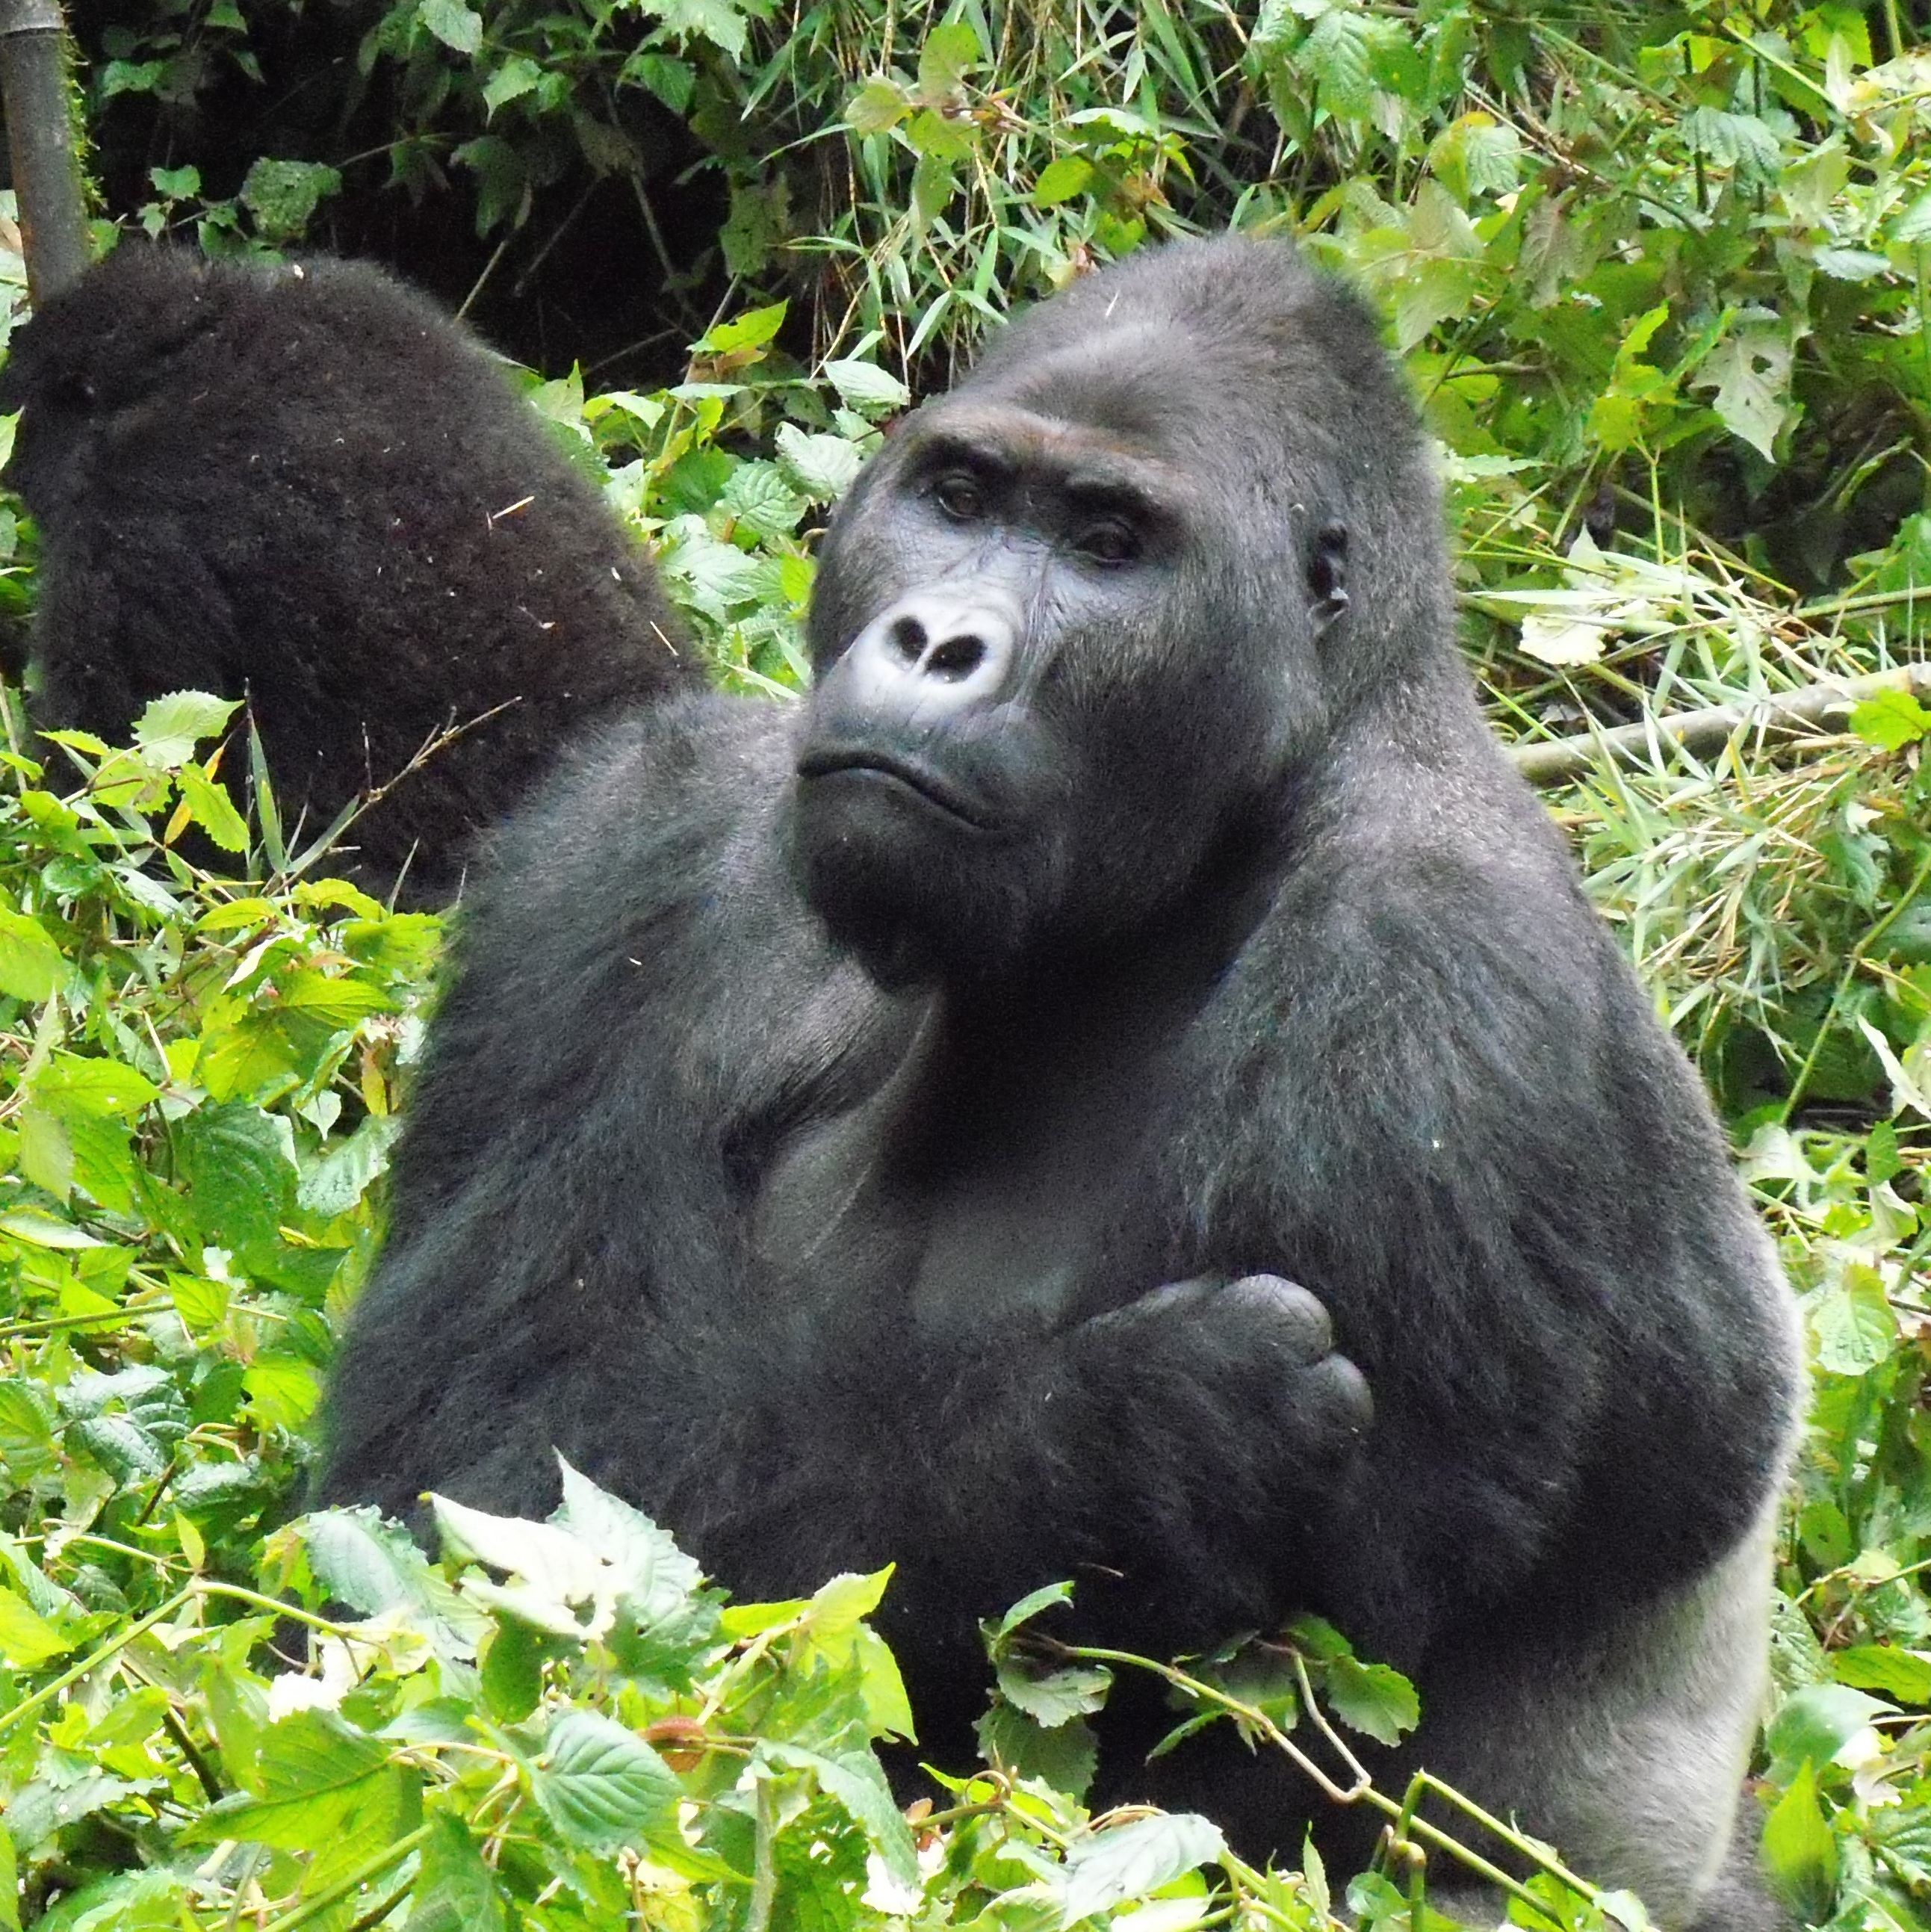 Eastern lowland gorilla (Grauer's gorilla) .